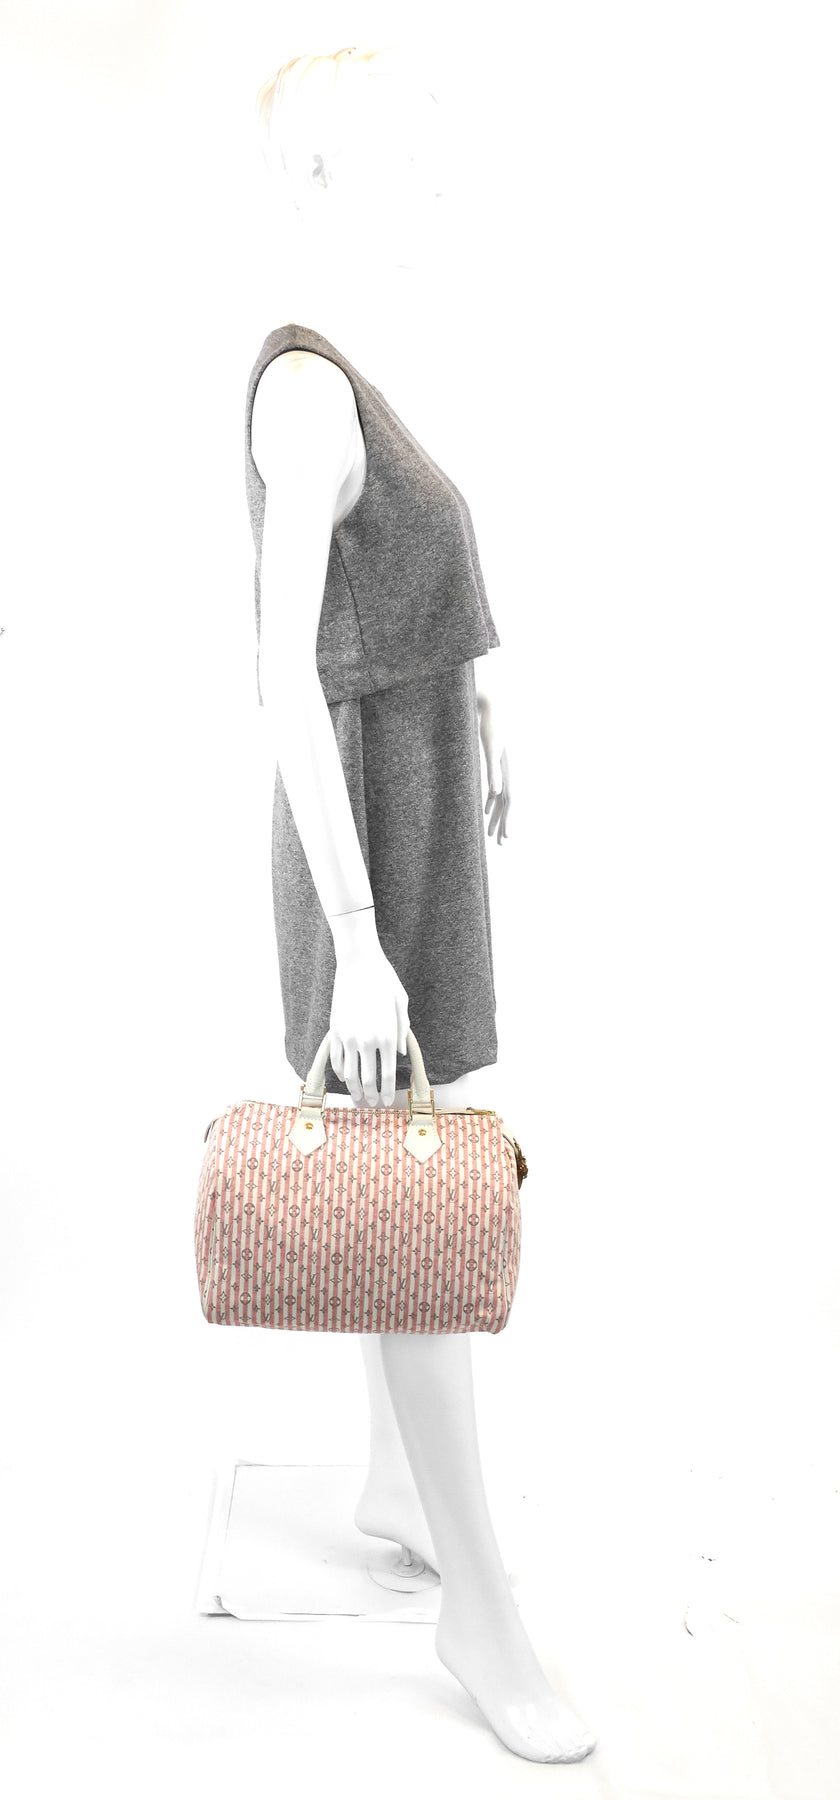 Louis Vuitton M95501 Monogram Mini-Lin Hand Bag Croisette Speedy 30 Duffle  Bag 